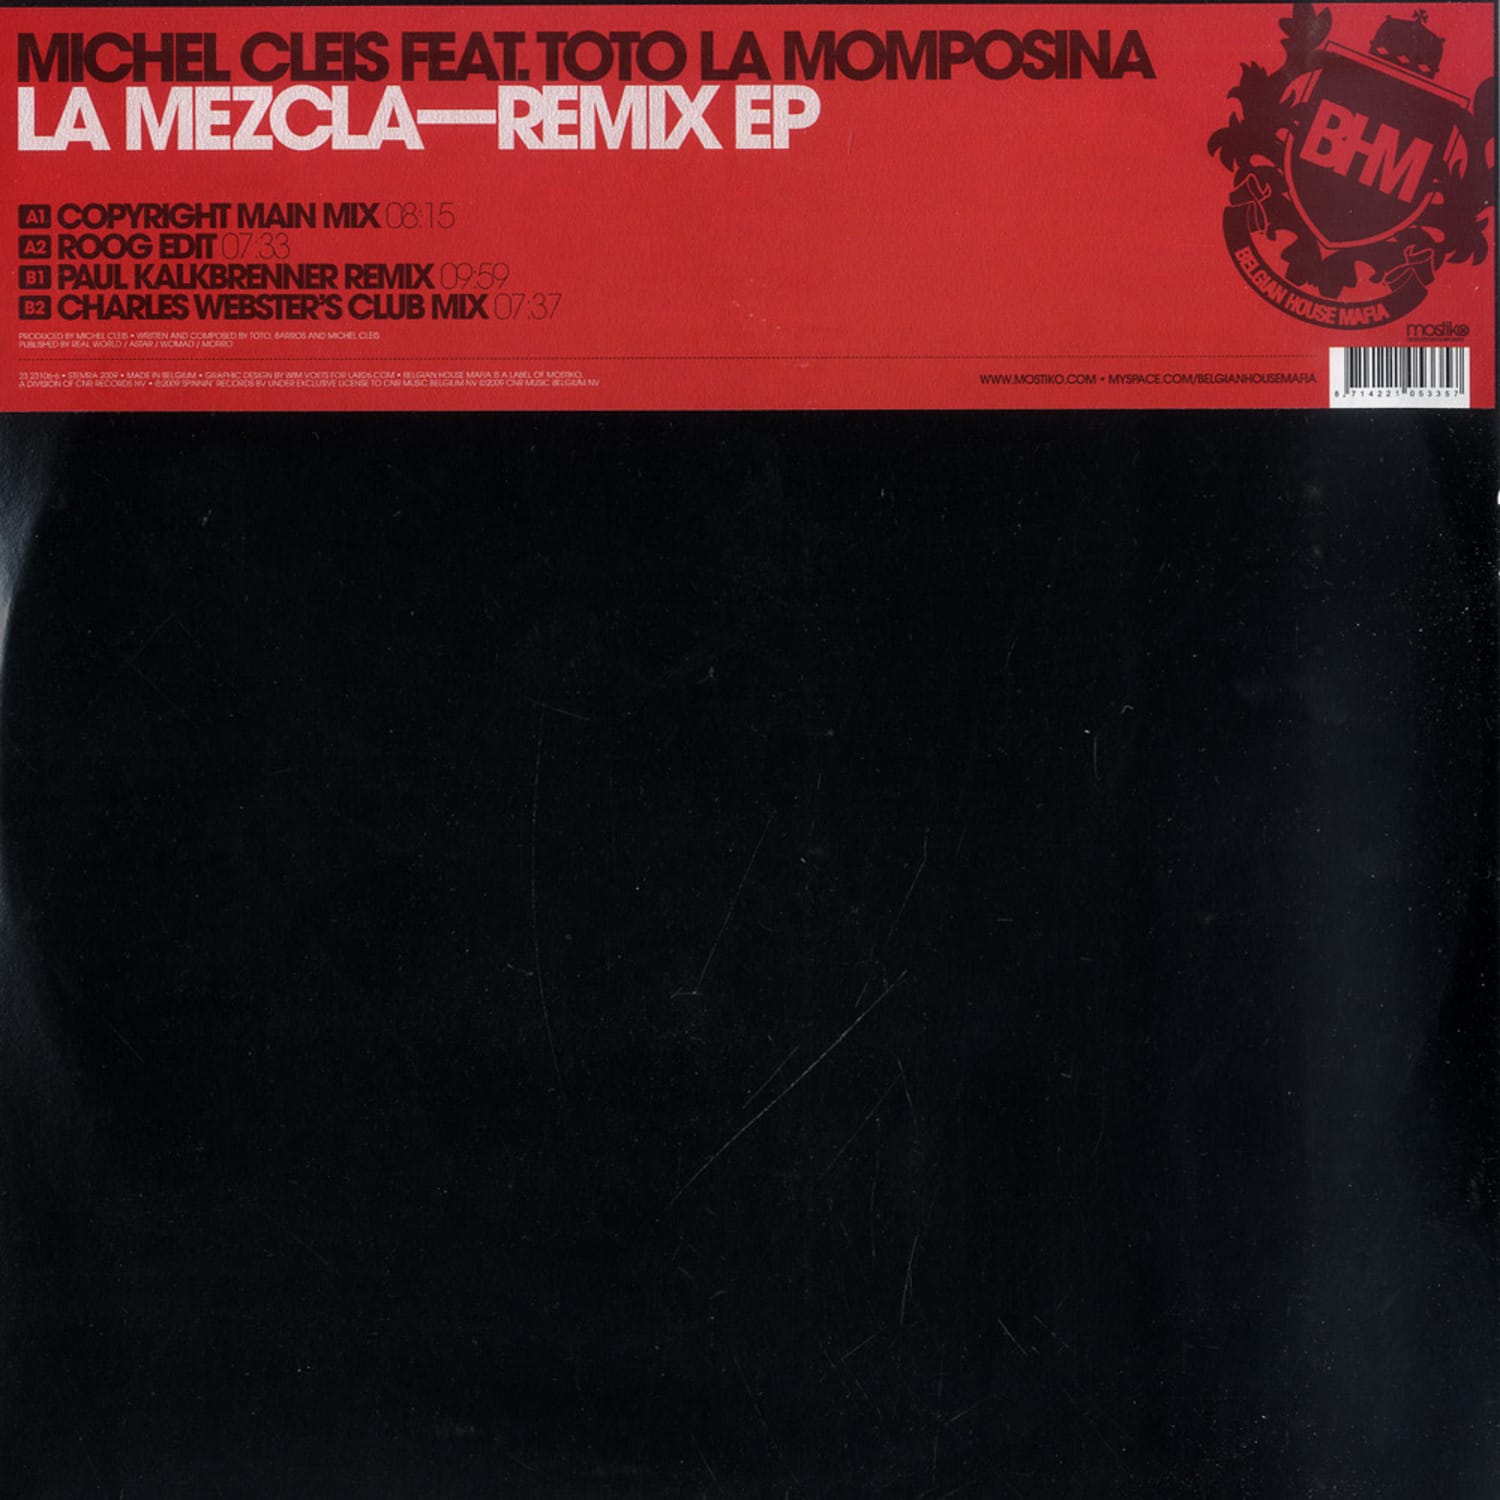 Michel Cleis feat. Toto La Momposina - LA MEZCLA - REMIX EP 